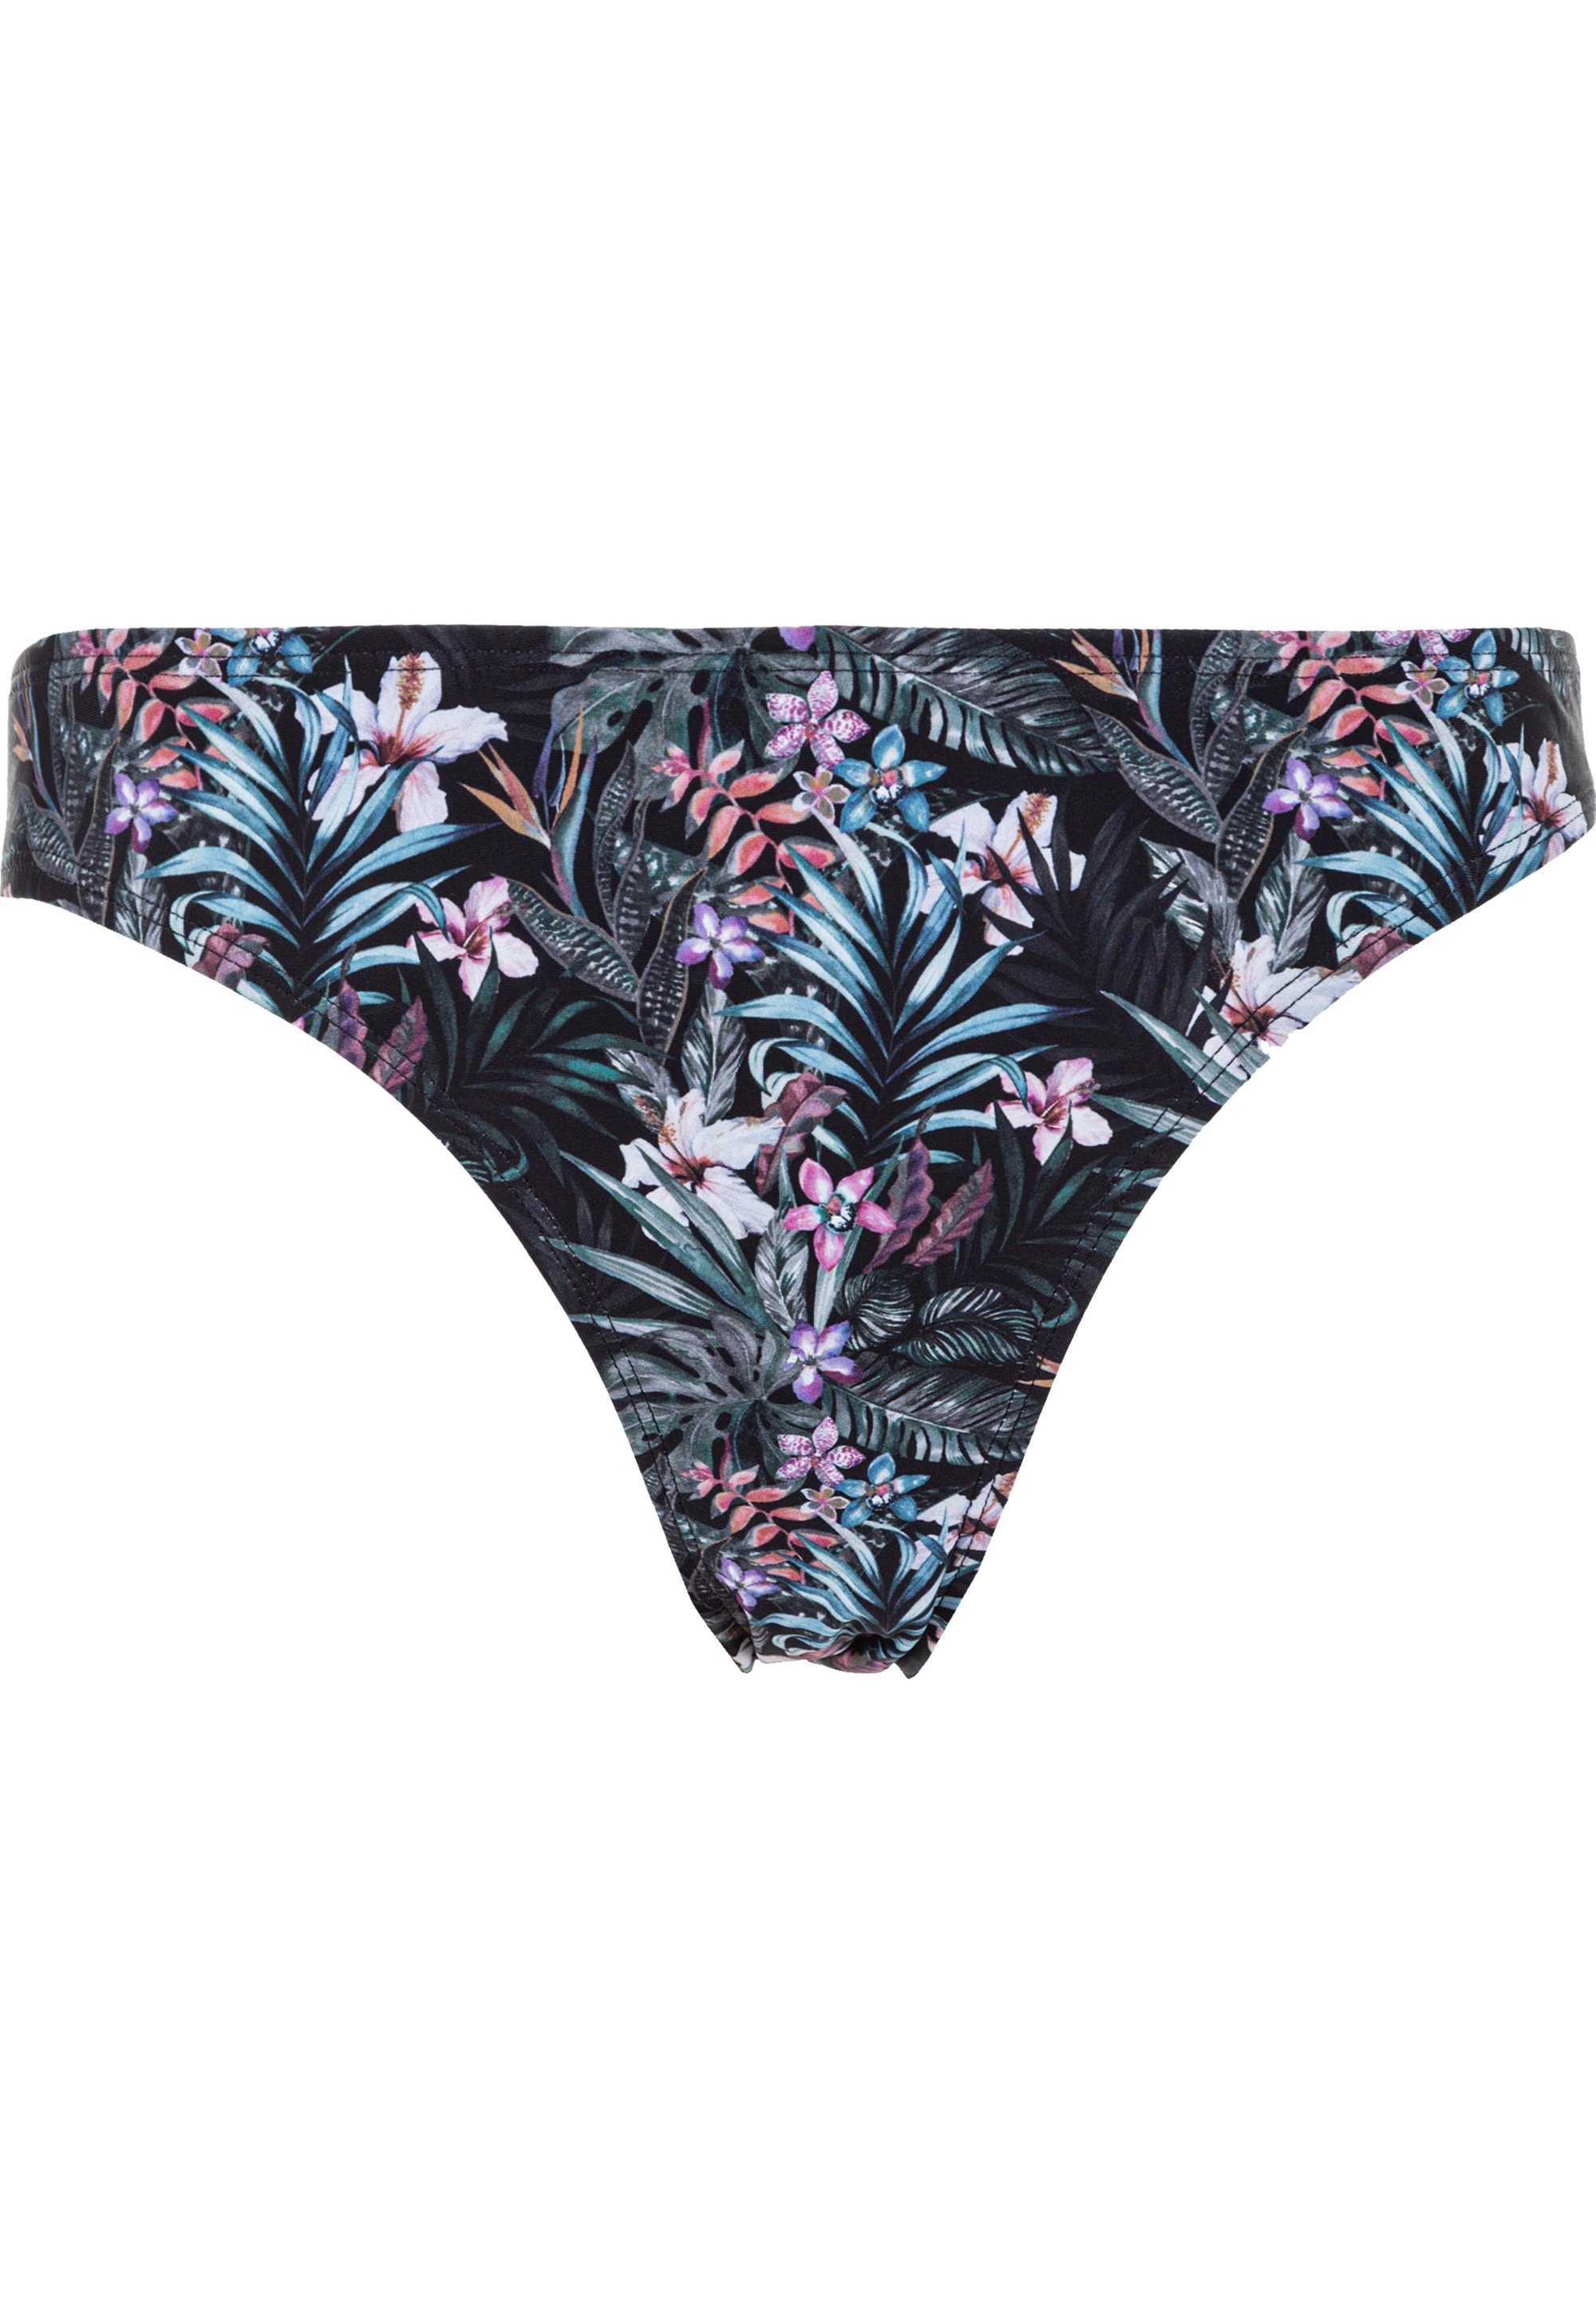 Wäsche/Bademode Bikinis CRUZ Bikini-Hose Aprilia 1 Stück, In a printed pattern